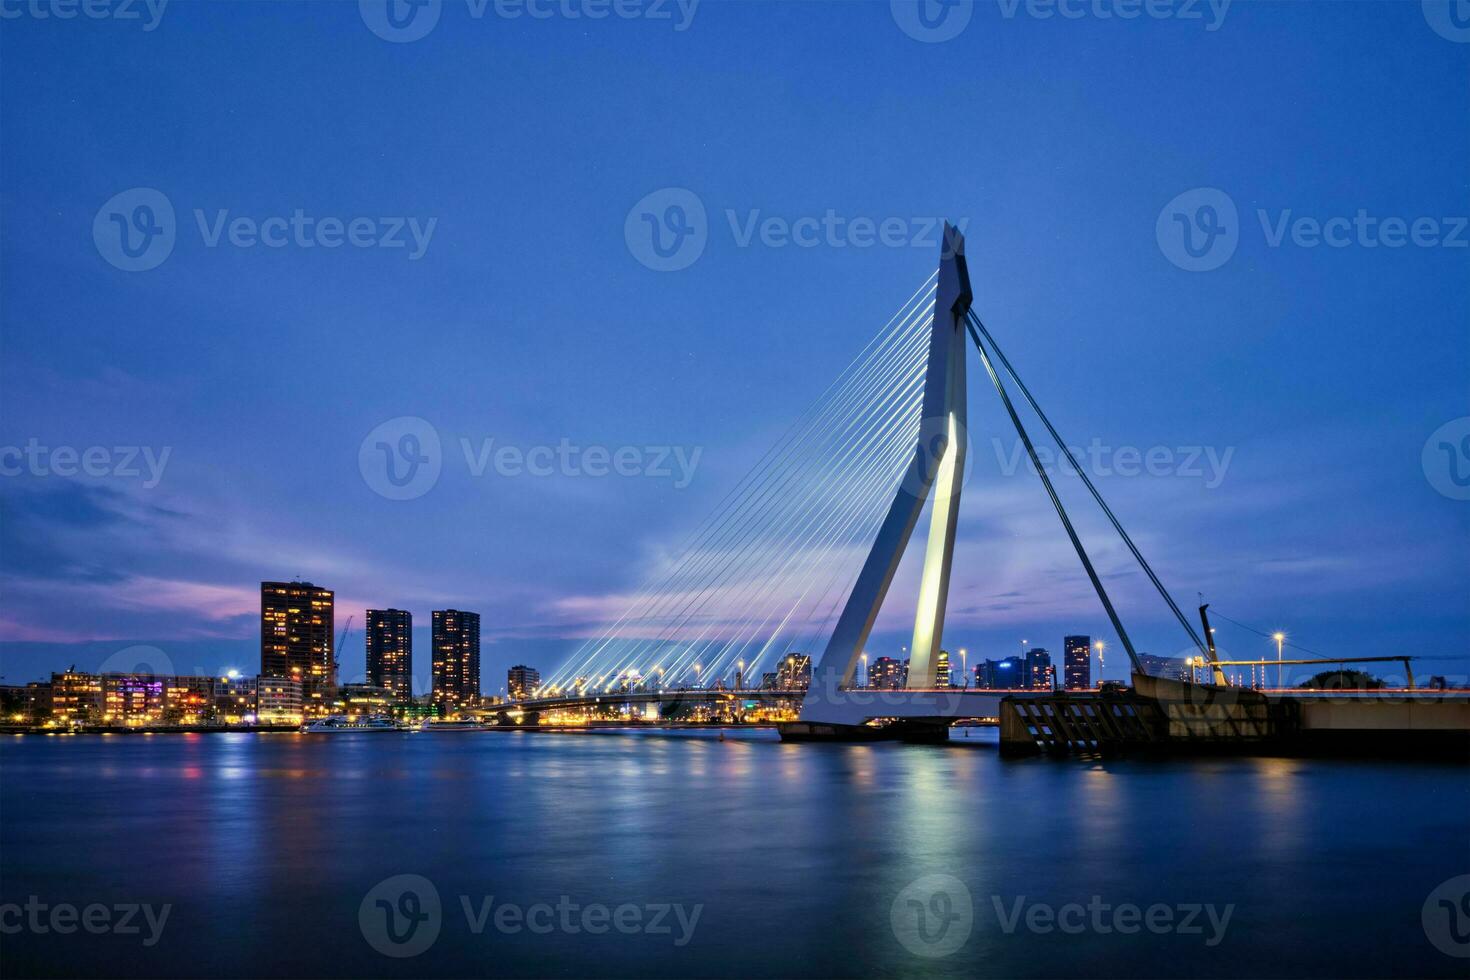 Erasmus Brücke, Rotterdam, Niederlande foto